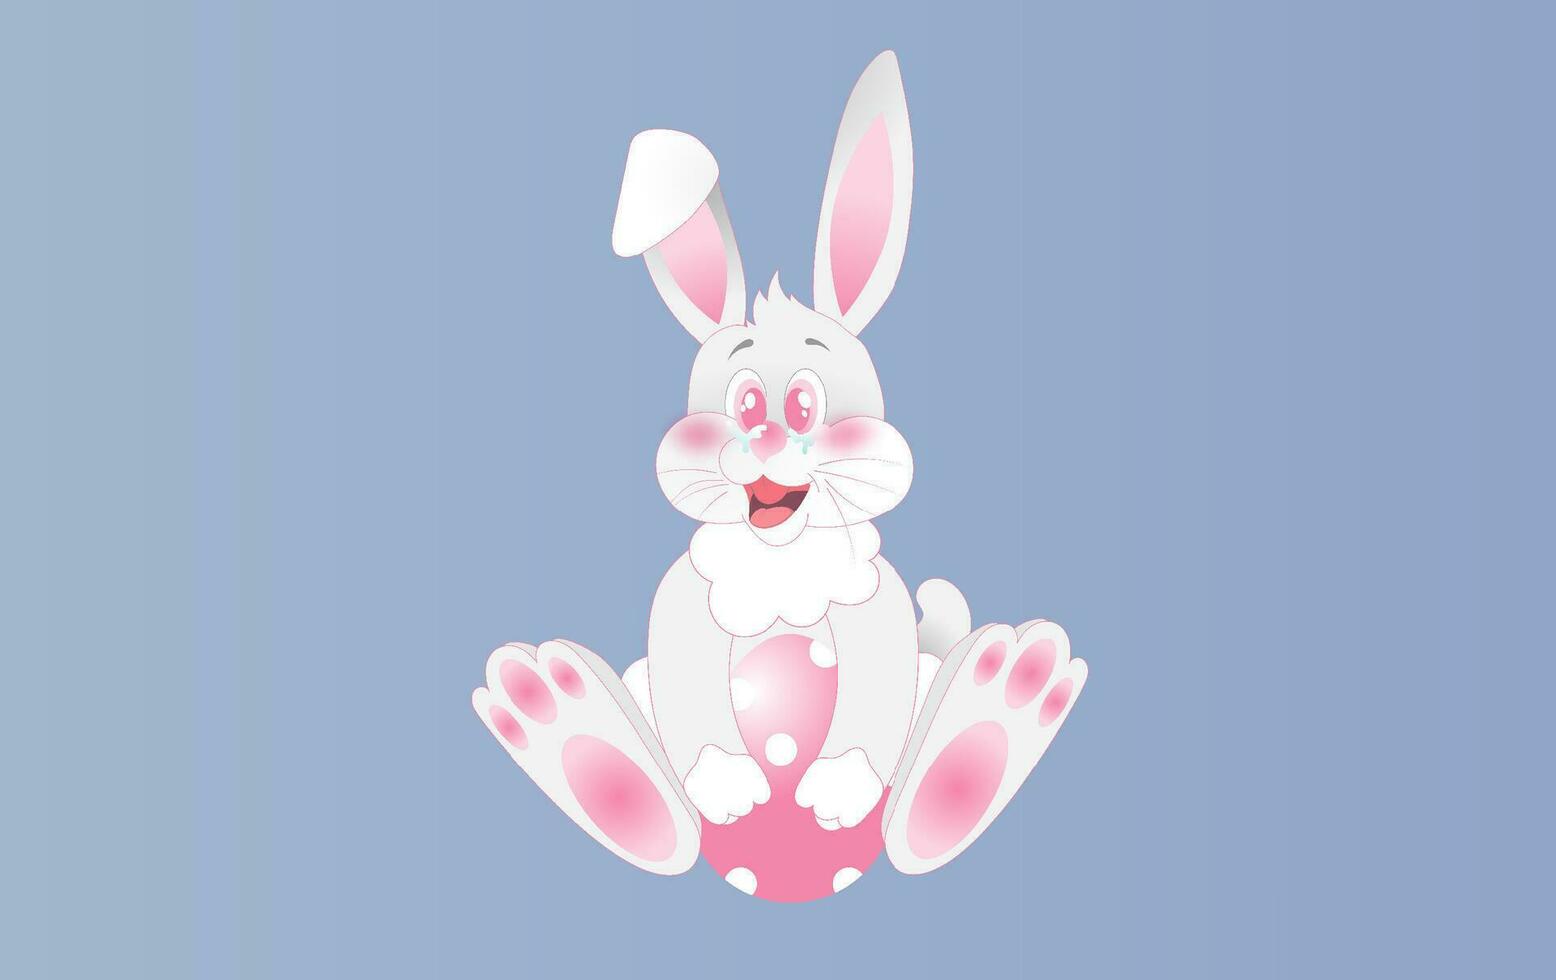 element vakantie voorjaar grappig konijn schattig voor ontwerp.blij Pasen dag eieren groet kaart sjabloon concept.creatief karakter idee kaartvorm kromme dier konijn zittend glimlach.vector illustratie.eps10 vector